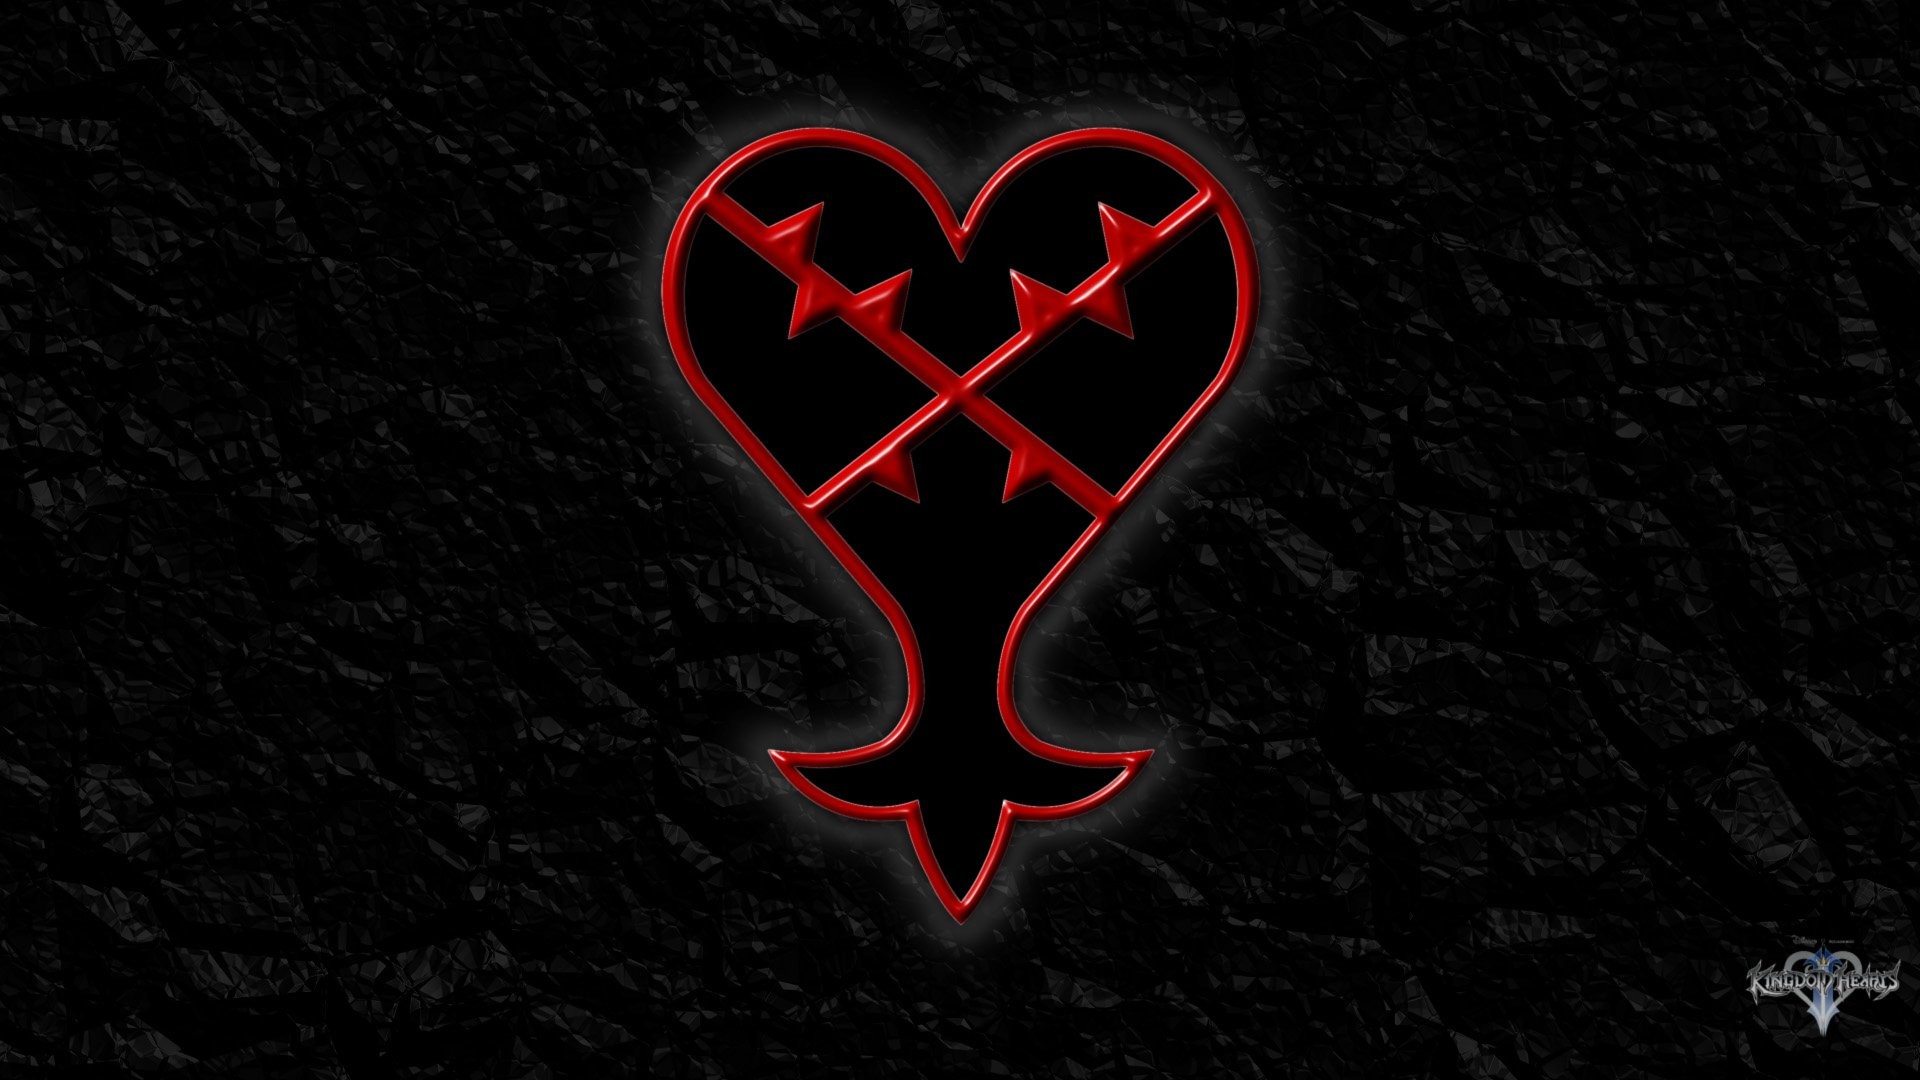 1920x1080 Kingdom Hearts Heartless Symbol